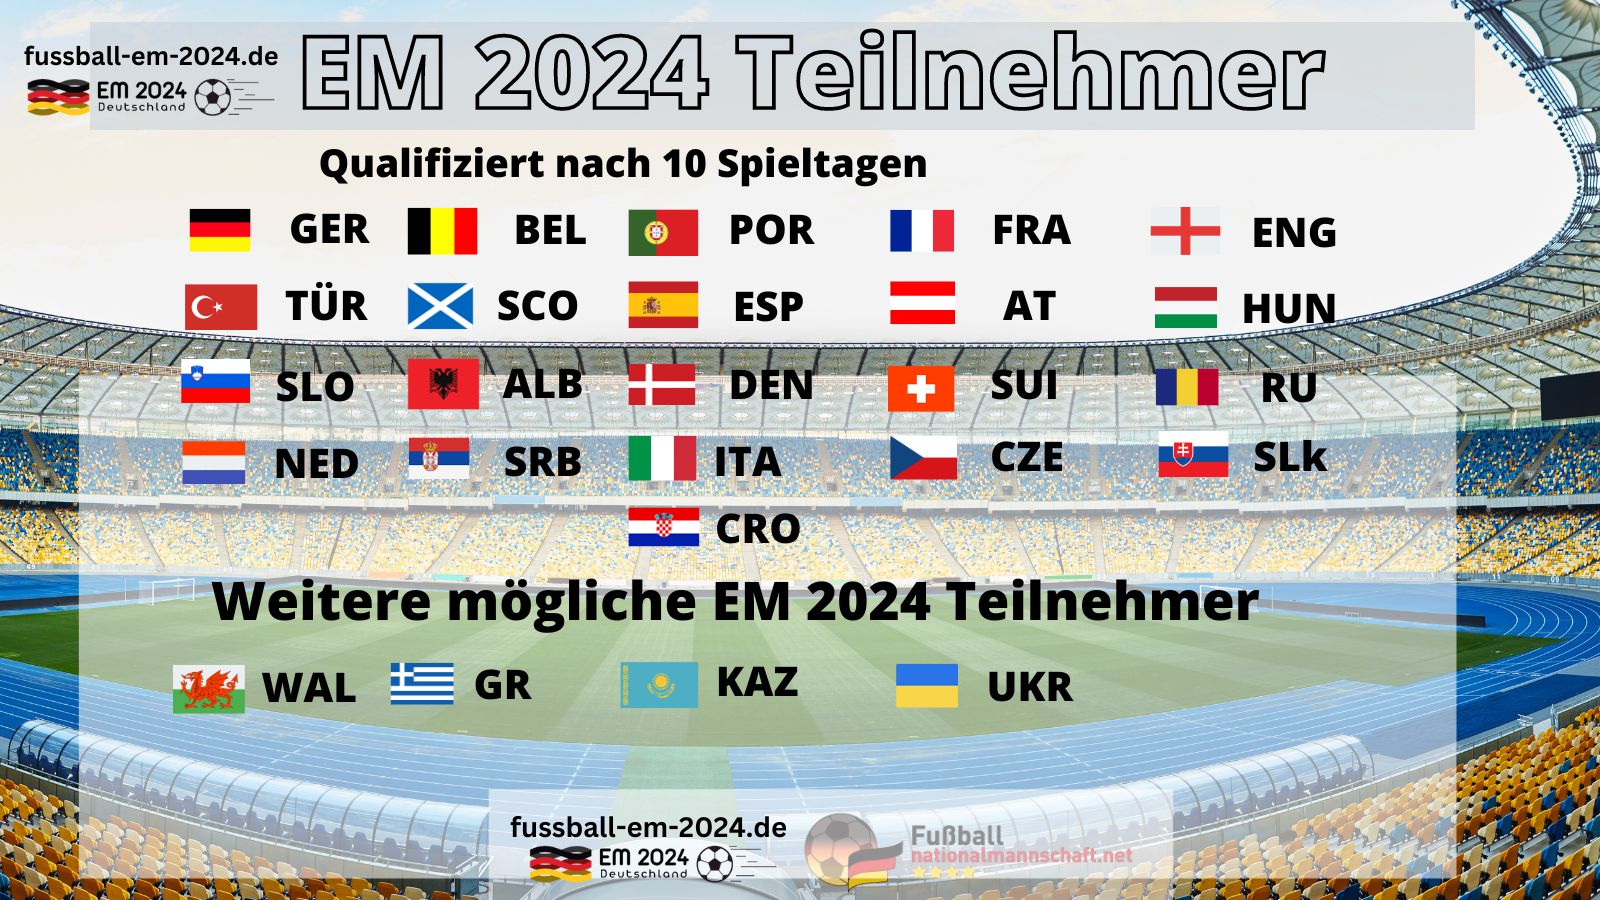 24 EM Teilnehmer 2024